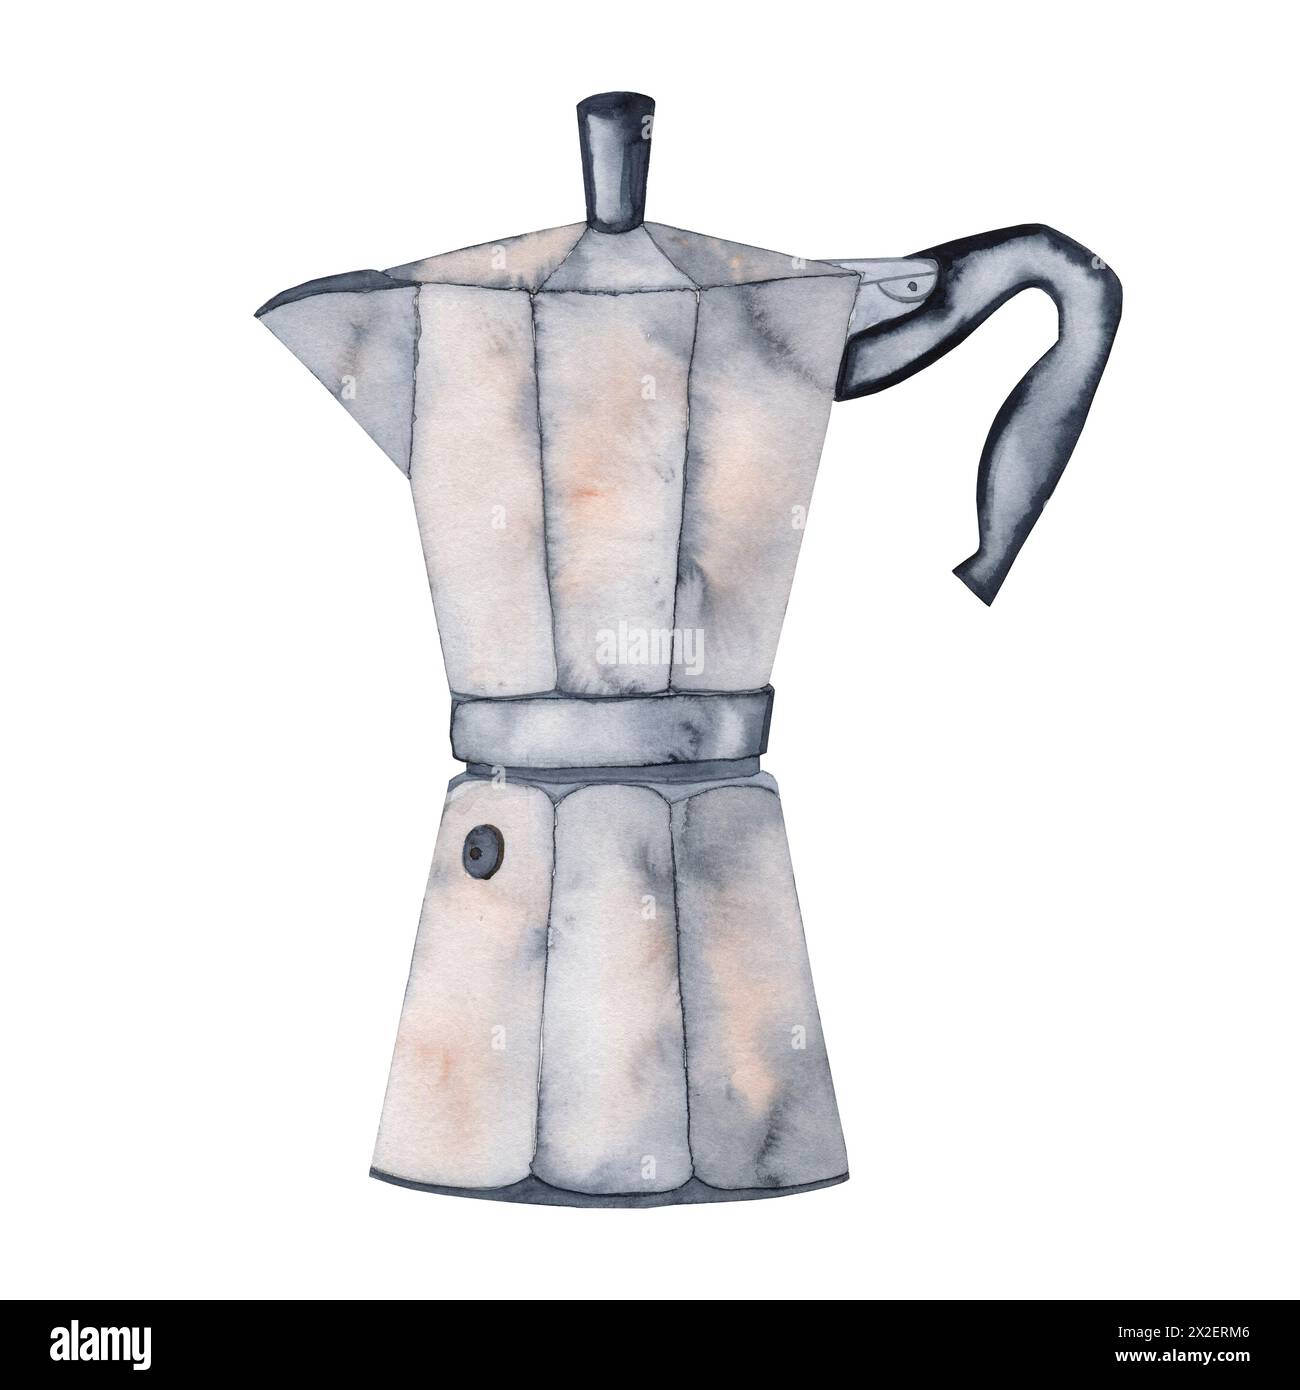 Macchina per il caffè Geyser per creare un acquerello color moka. Immagine di una caffettiera in stile retrò su uno sfondo isolato. Foto Stock